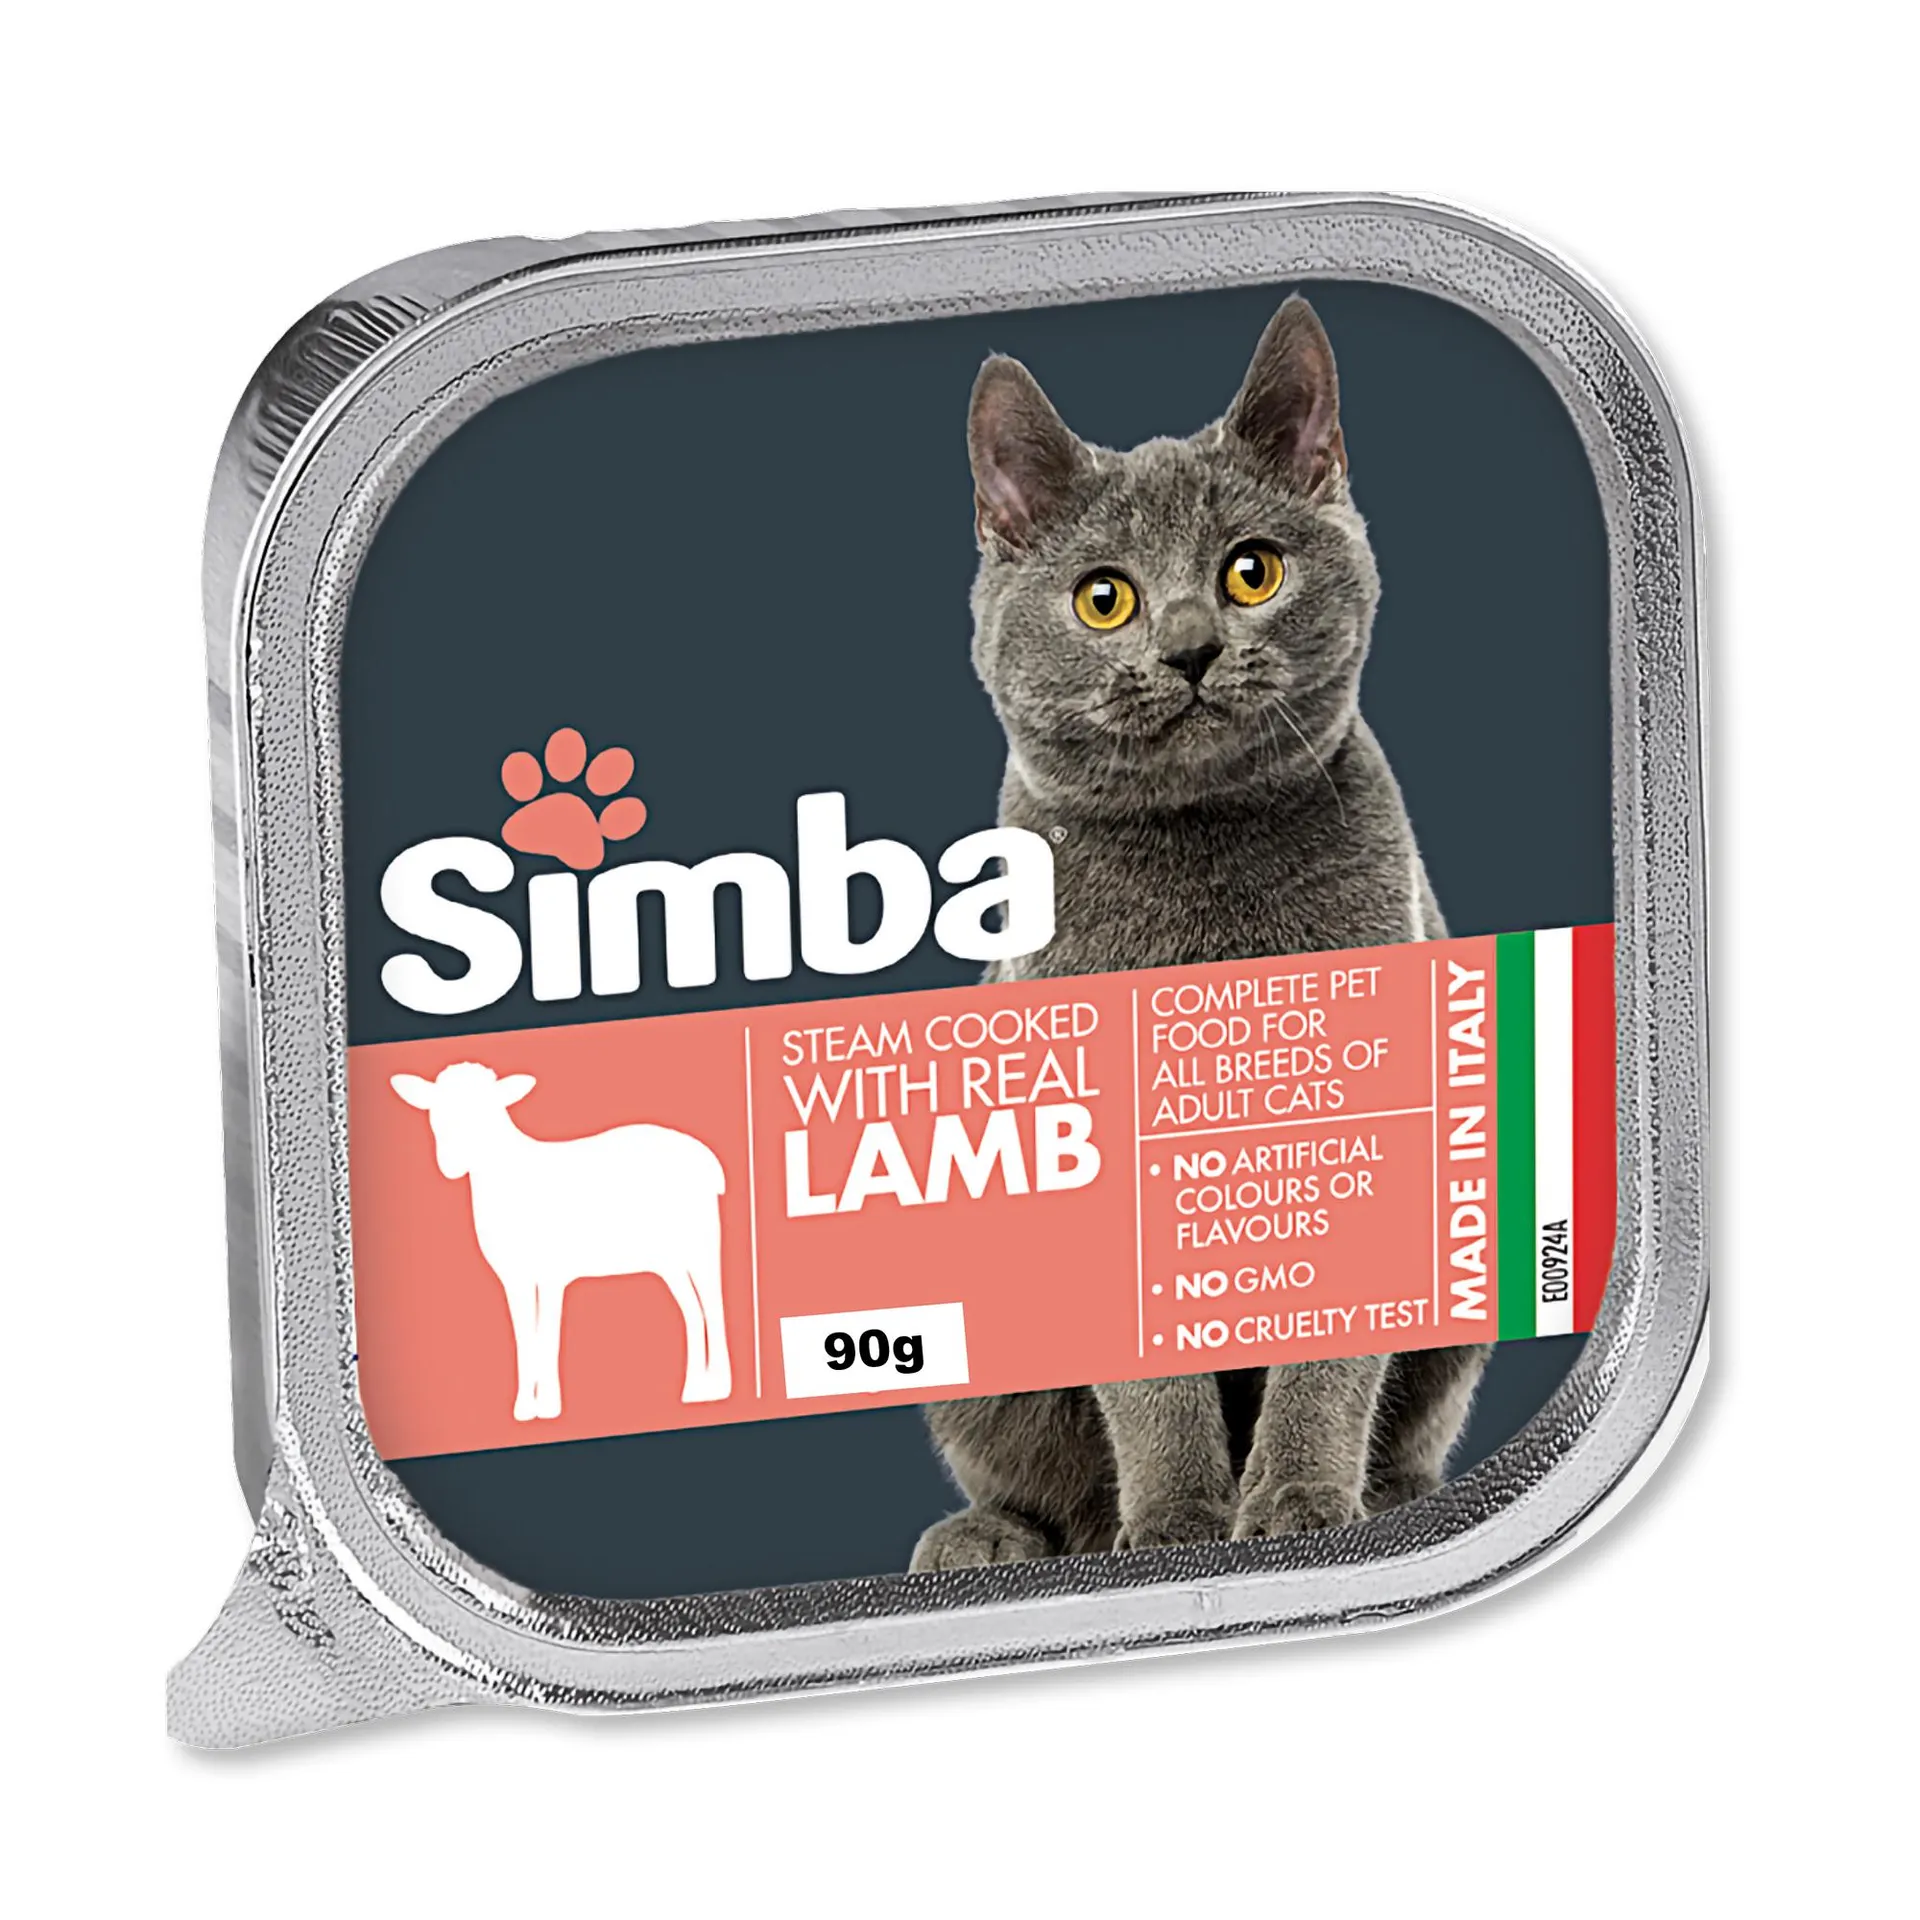 Simba Cat Food Lamb 90g